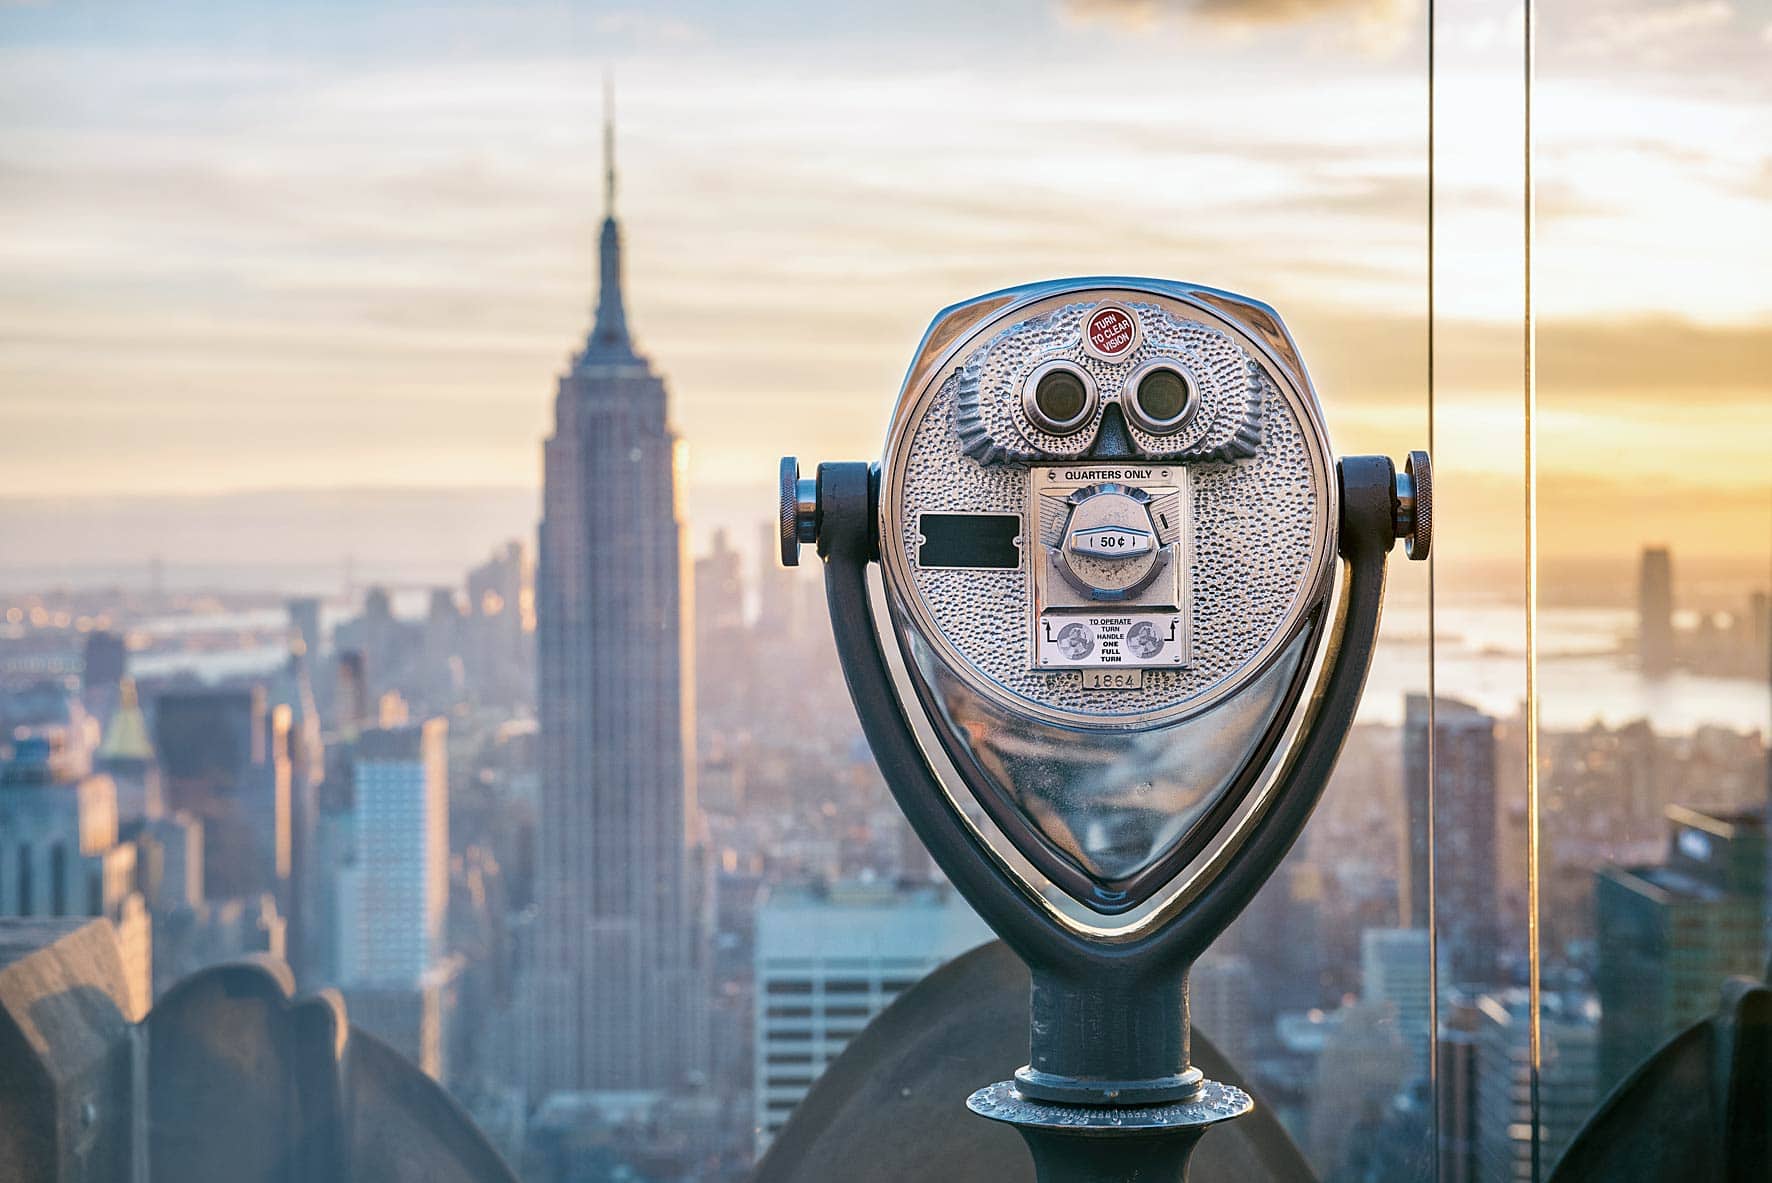 Goedaardig Lauw Samenwerken met Wat te doen in New York: 40 toffe tips stedentrip New York | WAT ZIJ ZEGT